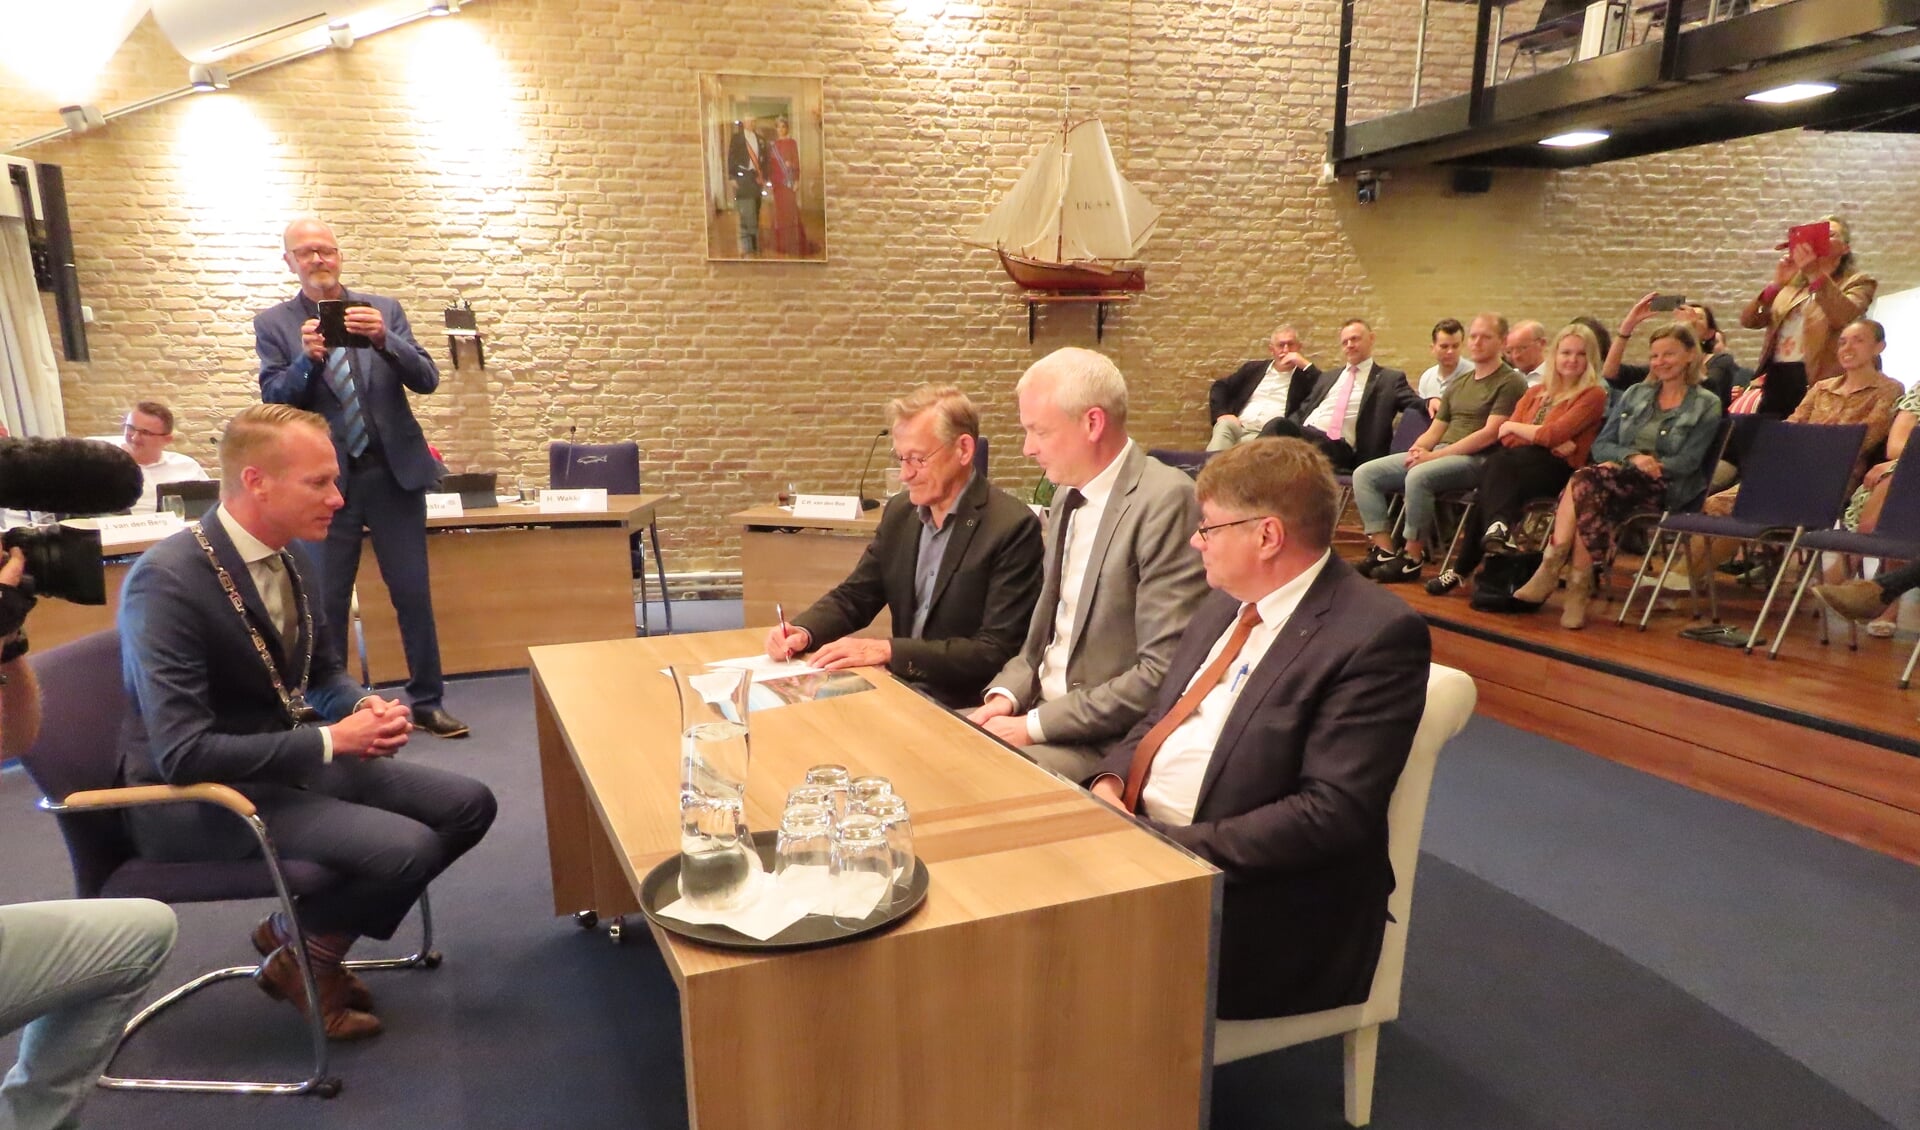 De voormannen van coalitiepartijen SGP (Jacob de Borst), ChristenUnie (Meindert Bakker) en CDA (Hans Crebas, v.r.n.l.), namen plaats in het trouwbankje om onder toeziend oog van burgemeester Cees van den Bos het coalitieakkoord te ondertekenen.